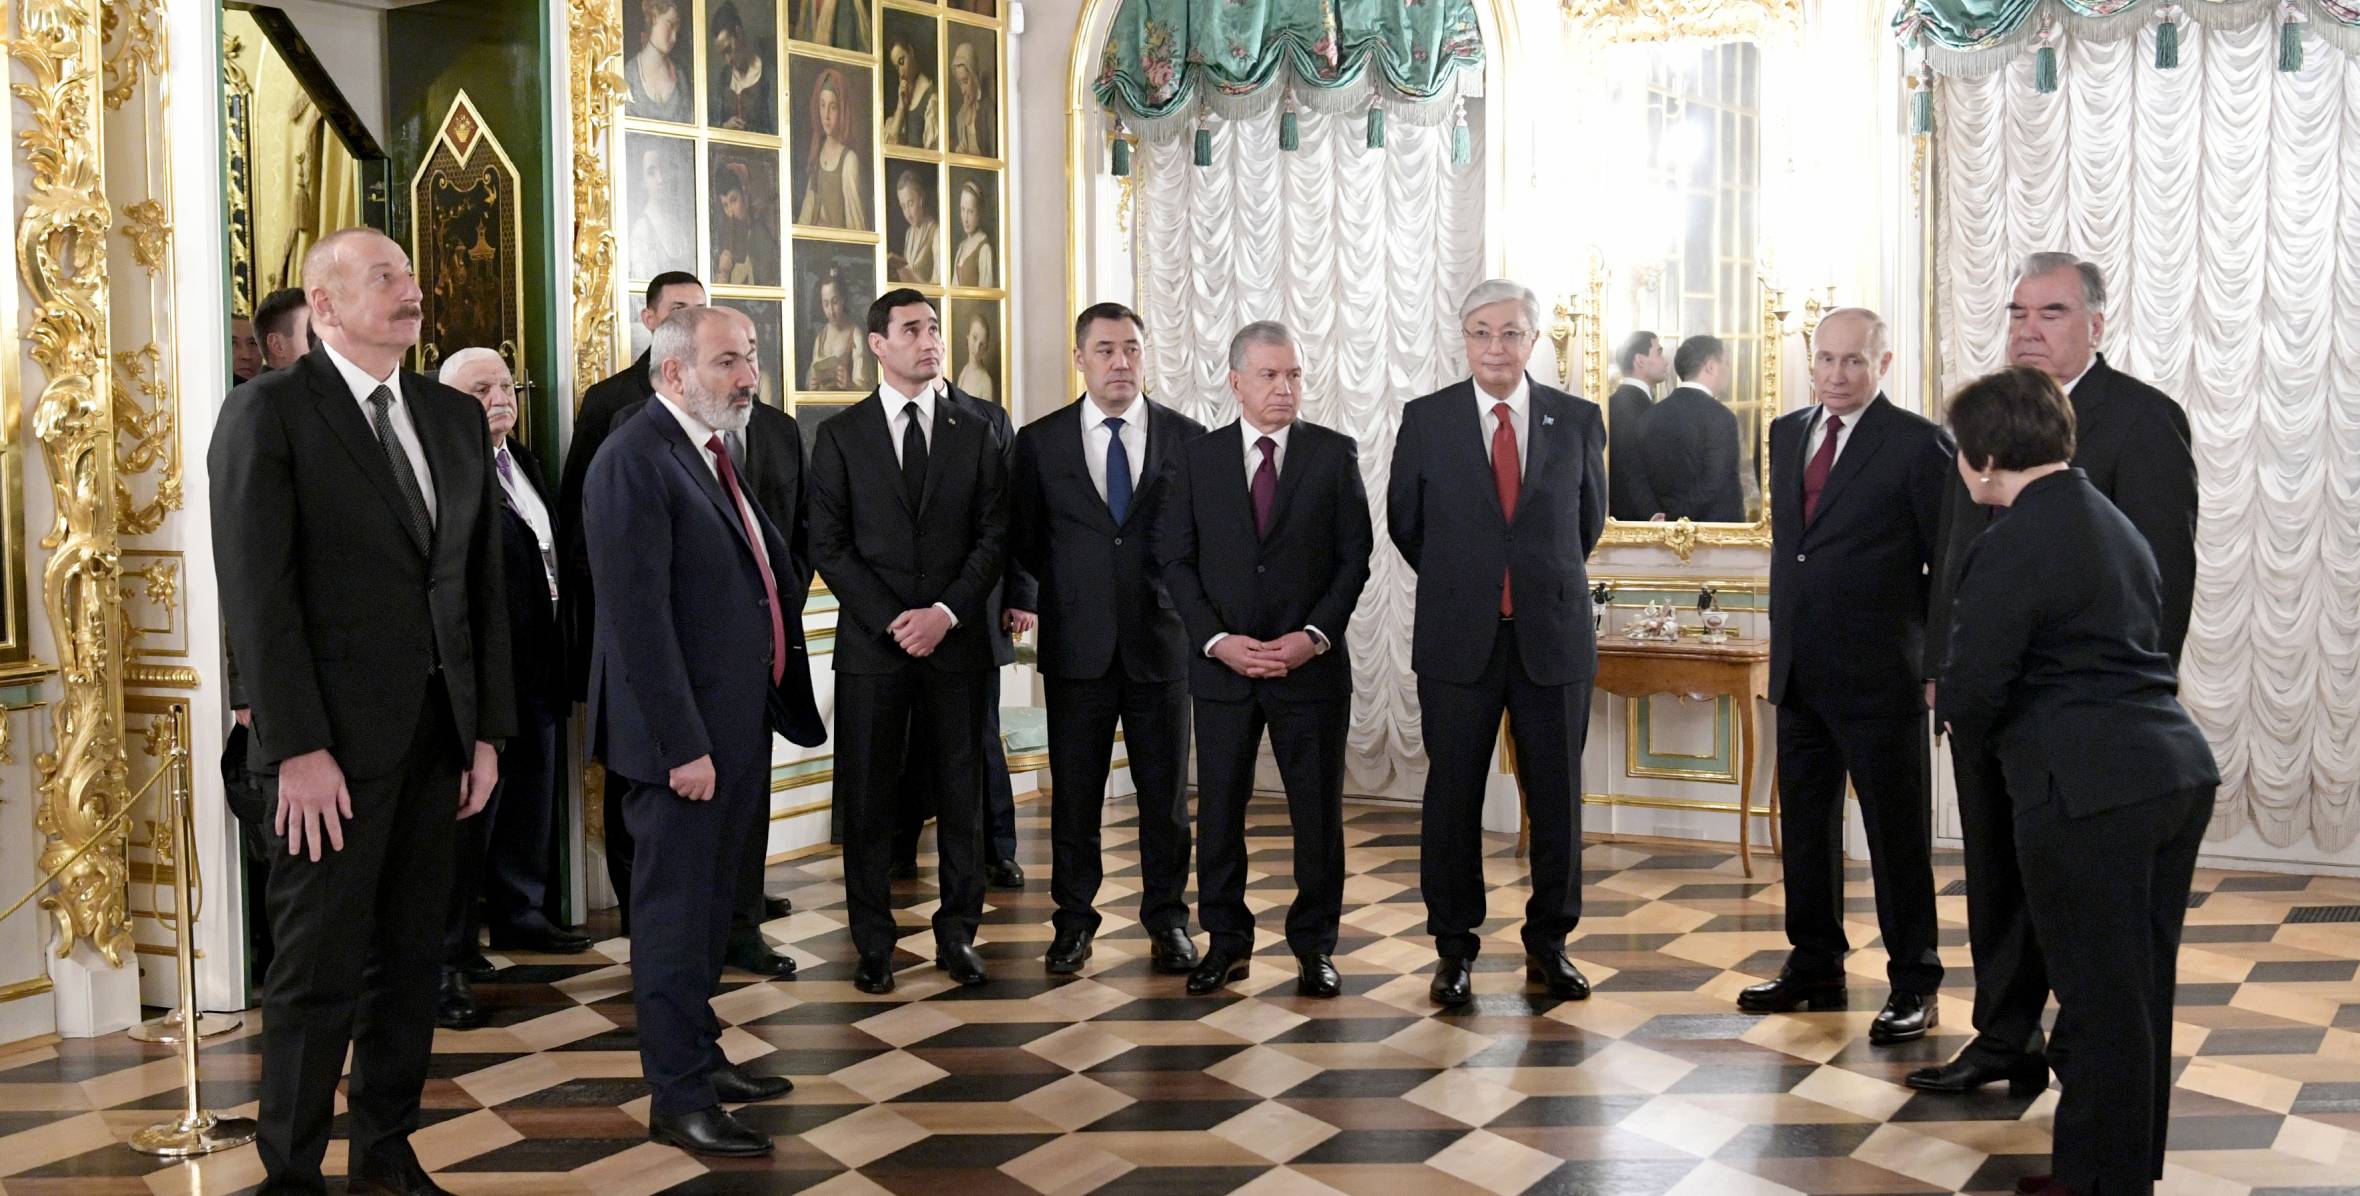 Ilham Aliyev visited Grand Peterhof Palace in Saint Petersburg